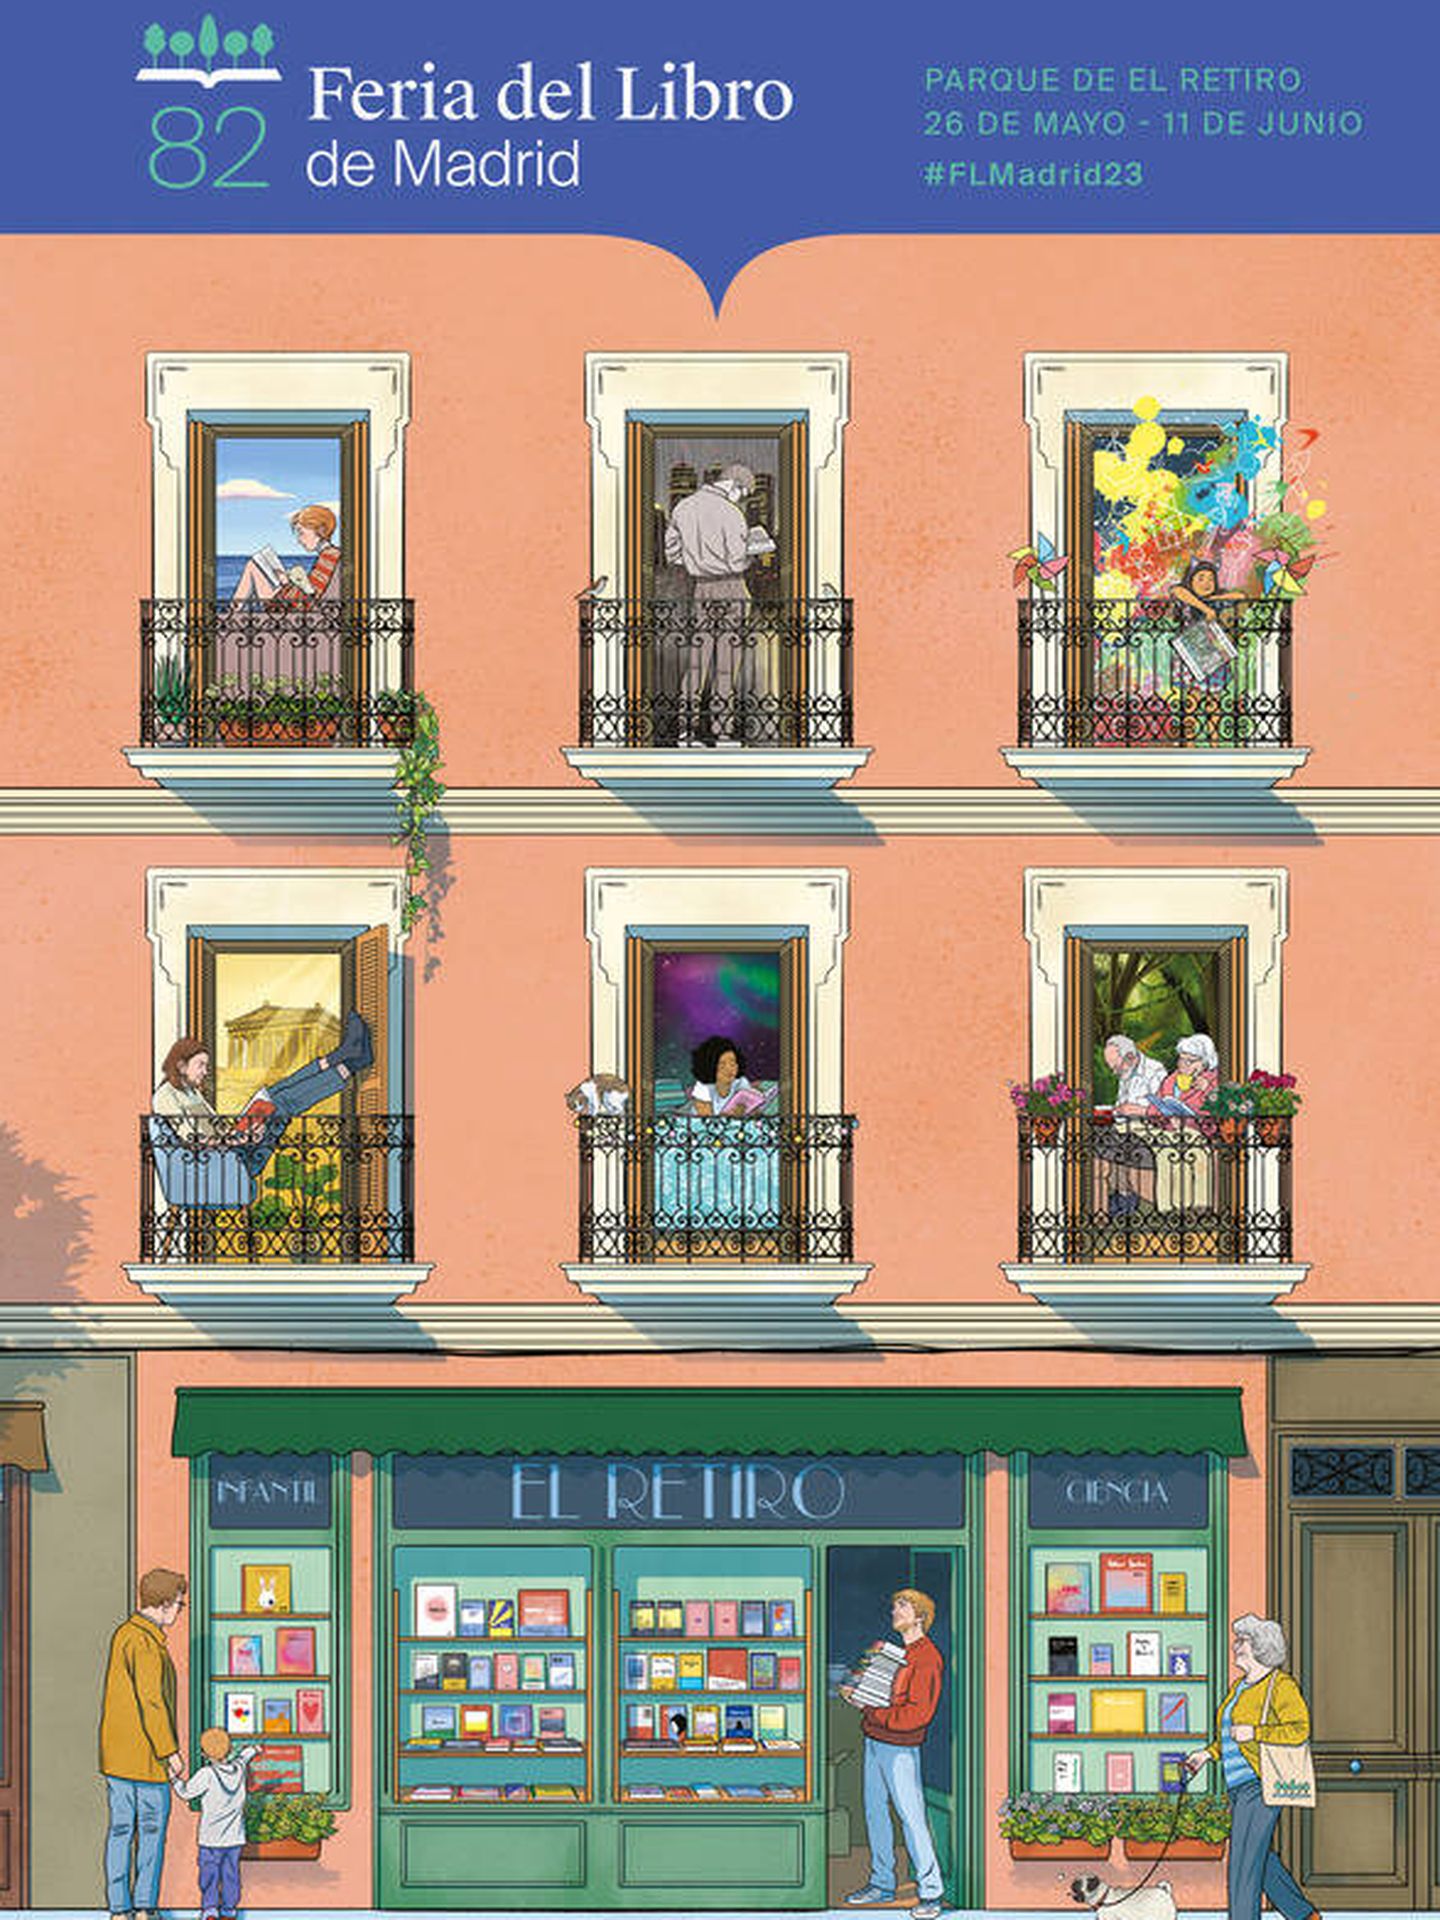 Cartel oficial de la Feria del Libro de Madrid 2023